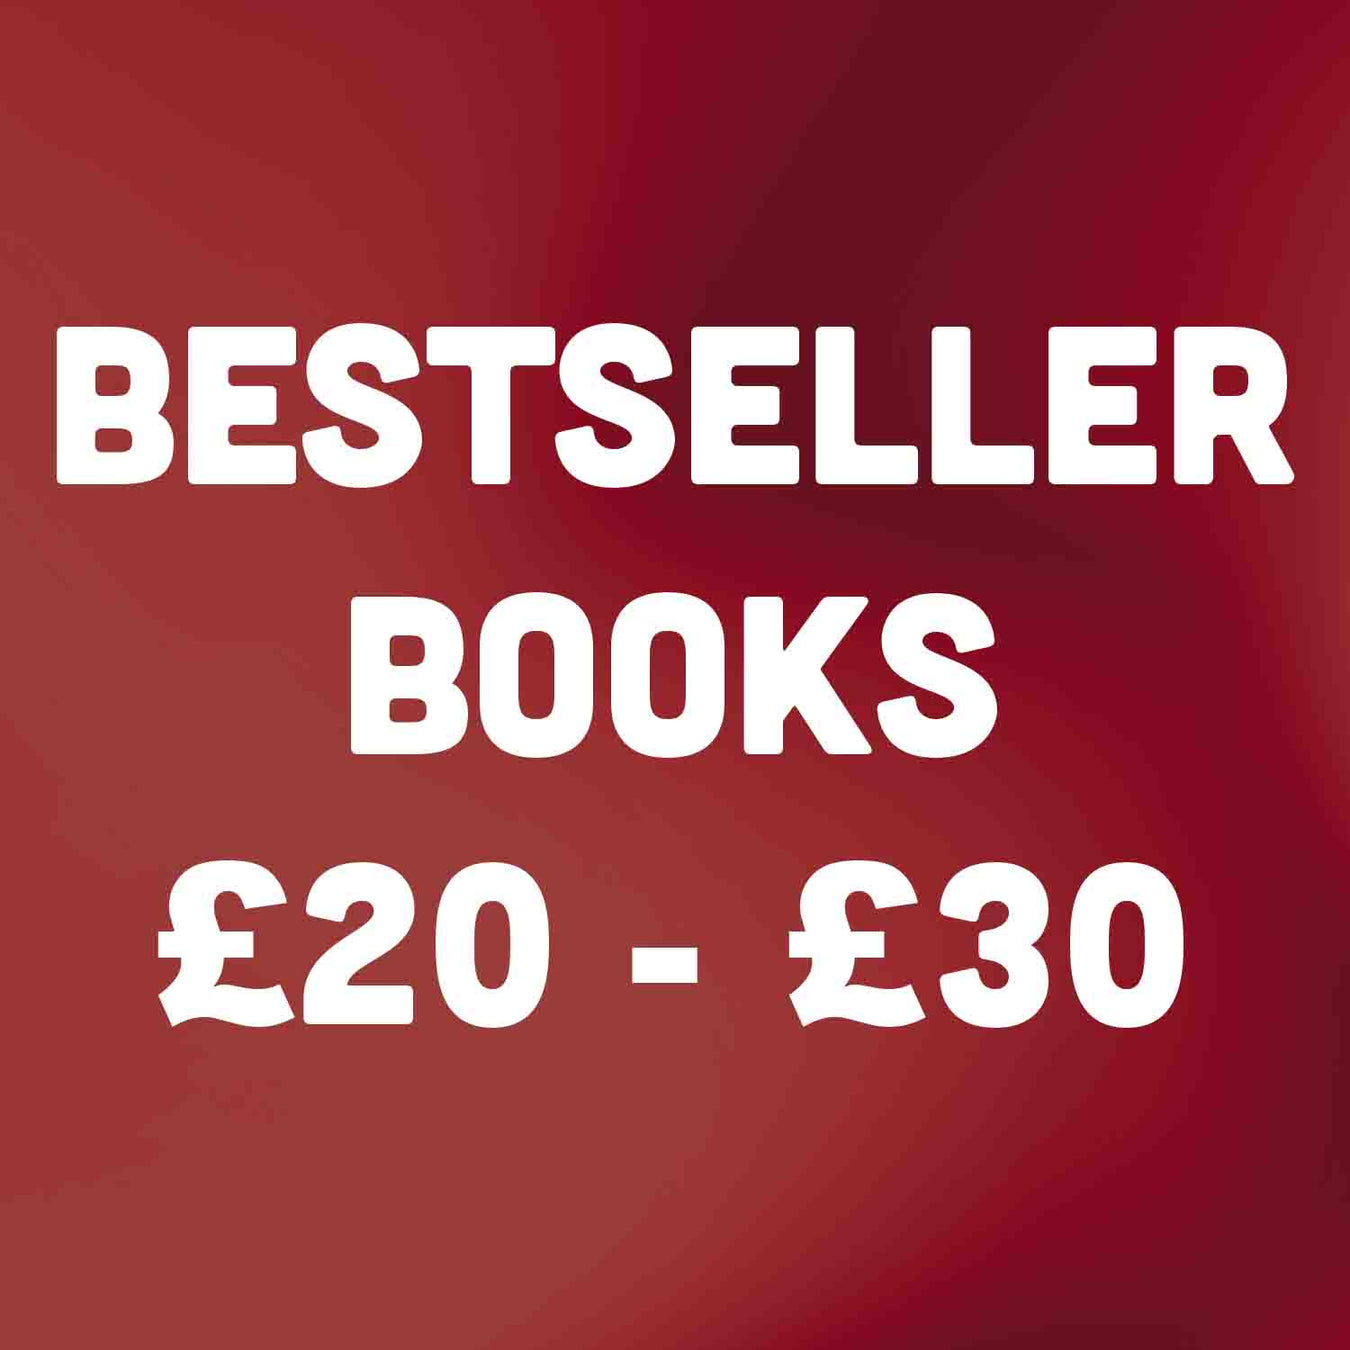 Bestseller Books £20 - £30